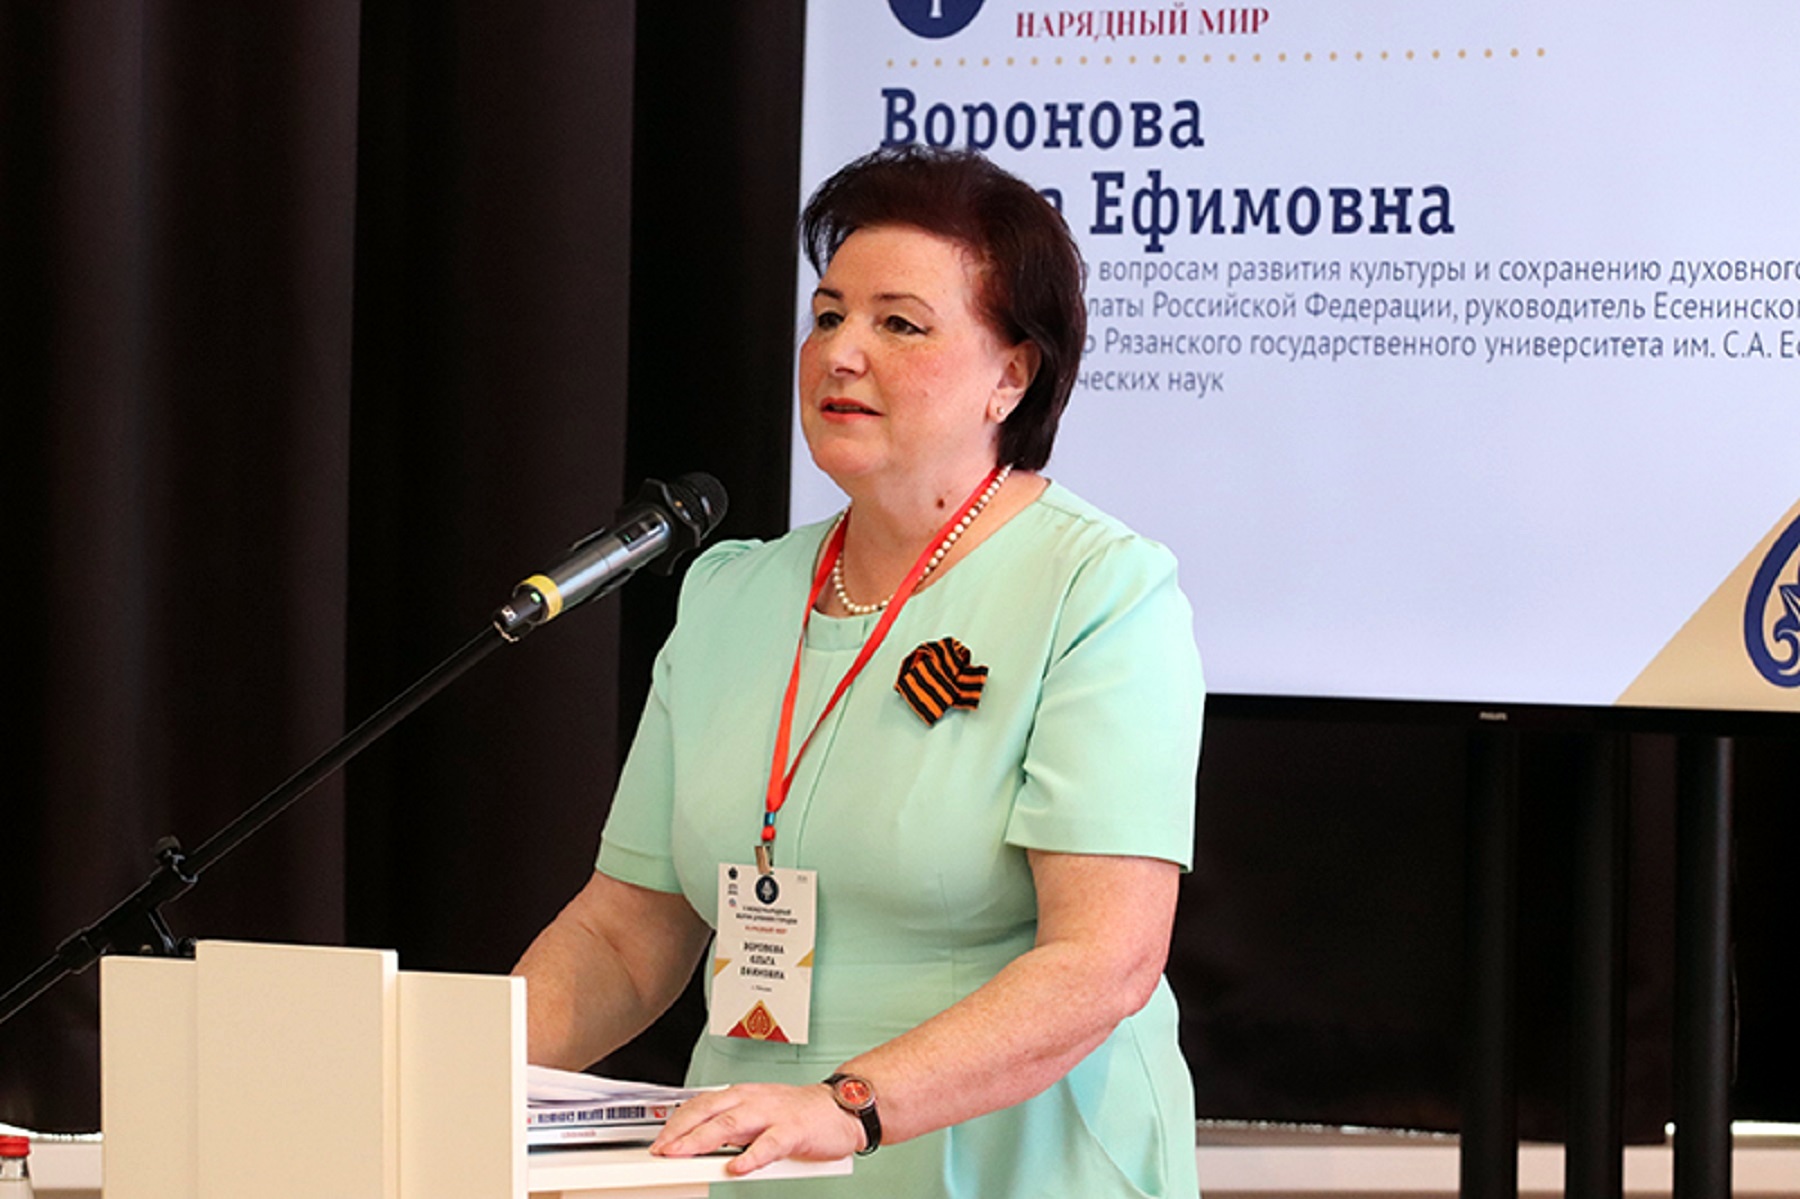 Ольга Воронова: Значение культурного суверенитета страны в условиях новых вызовов